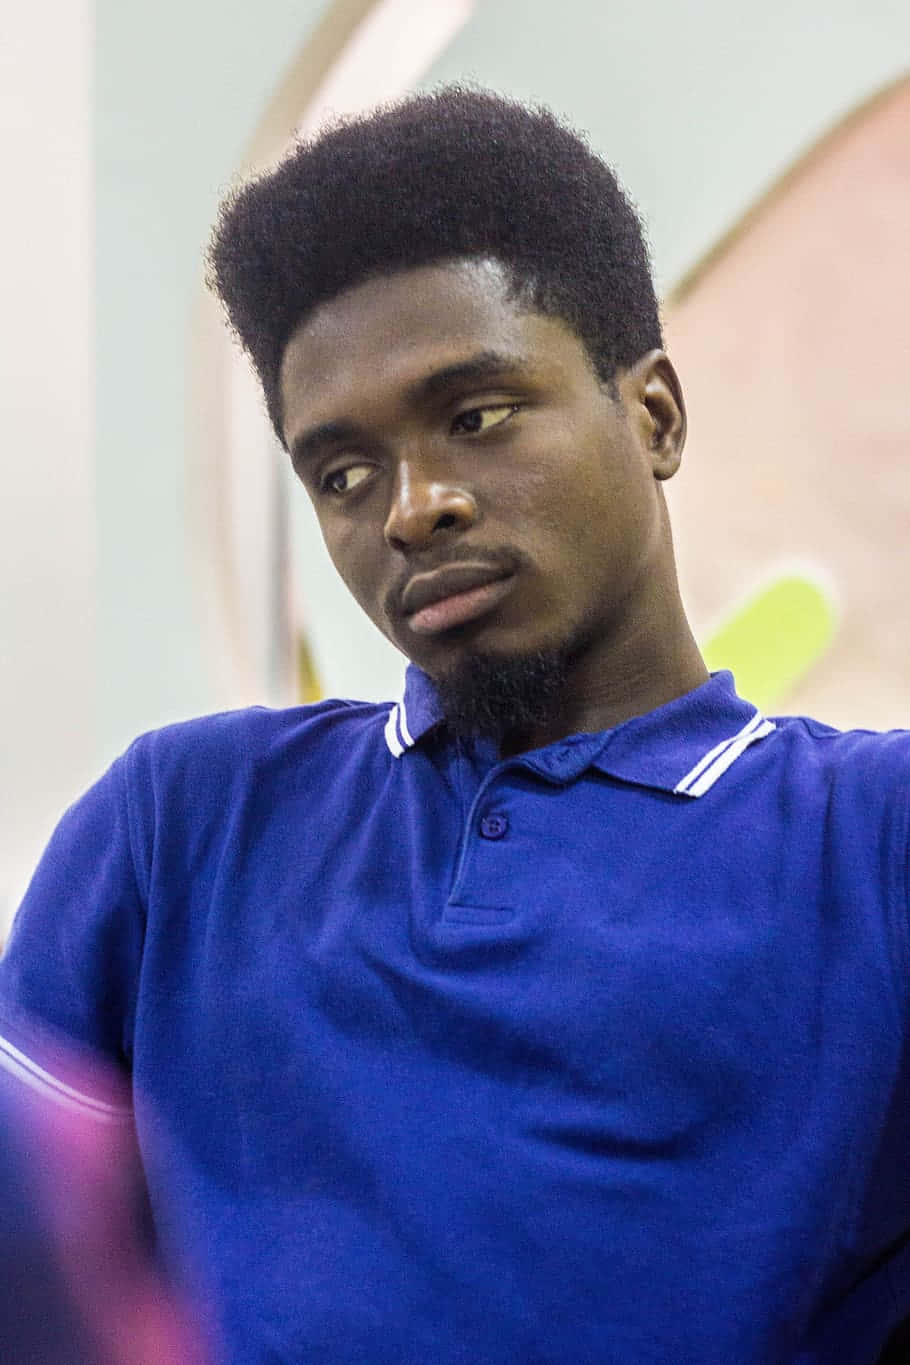 Thoughtful Nigerian Man in Blue Shirt Wallpaper